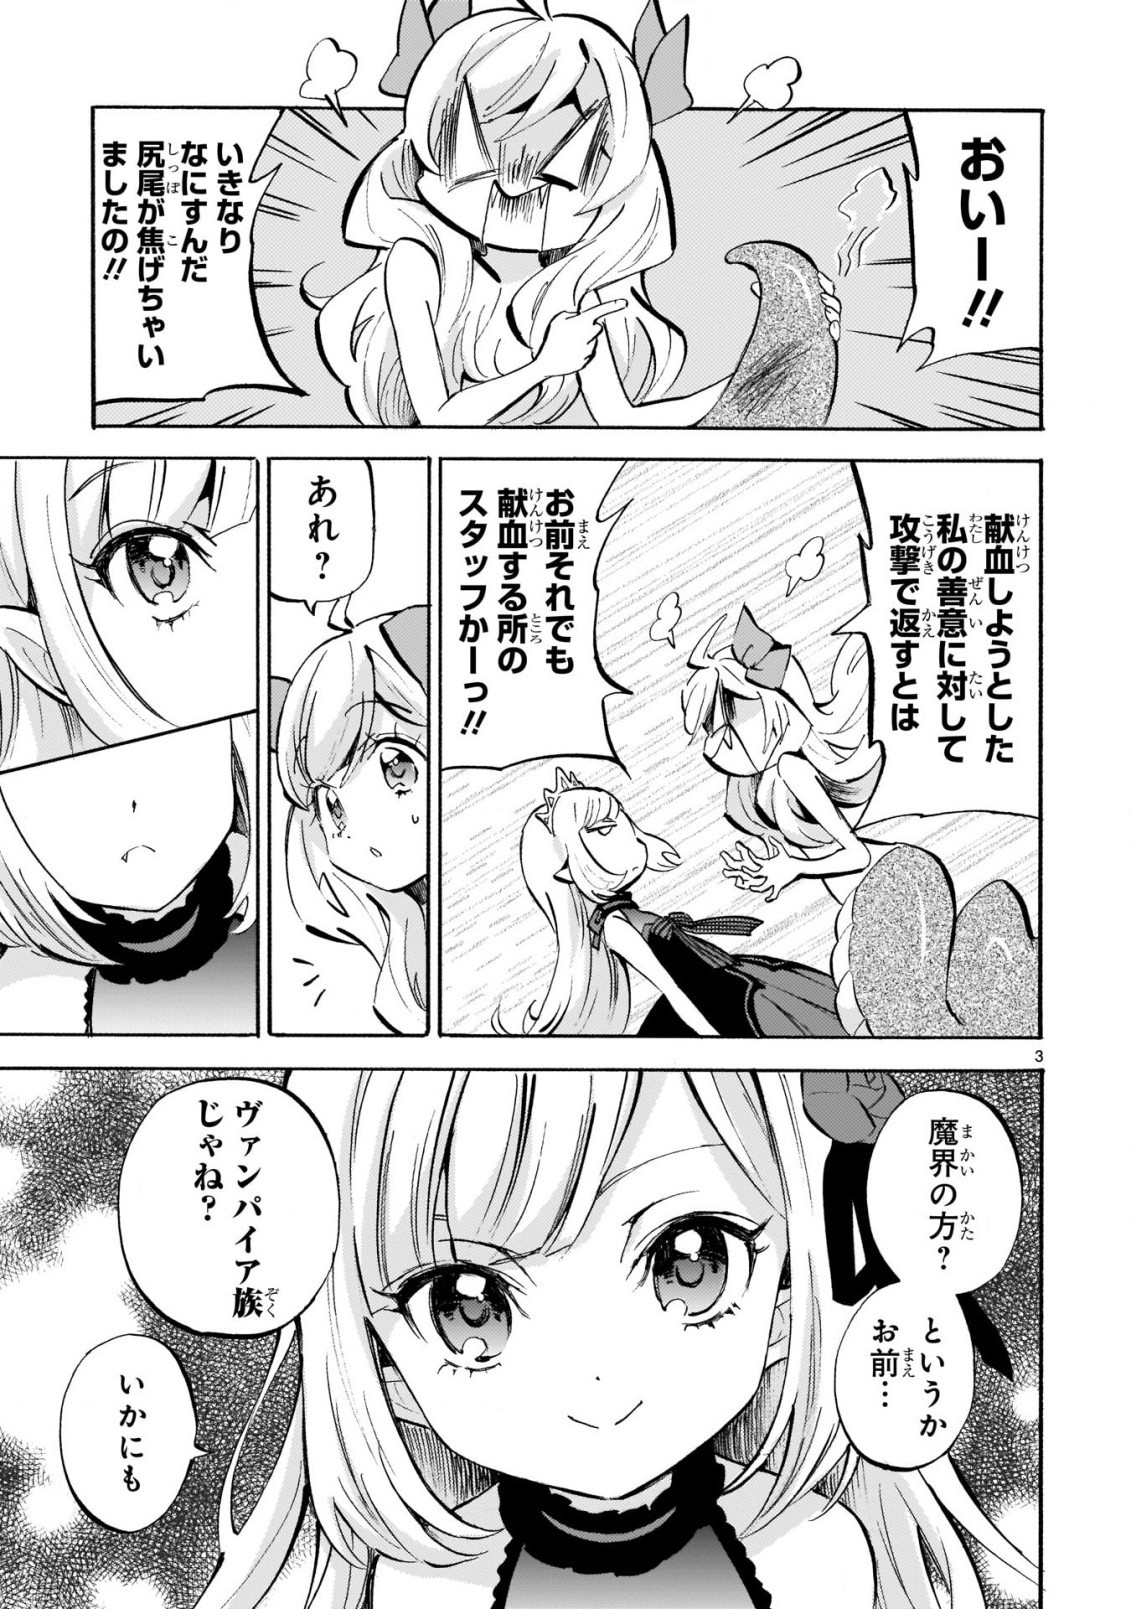 Jashin-chan Dropkick - Chapter 186 - Page 3